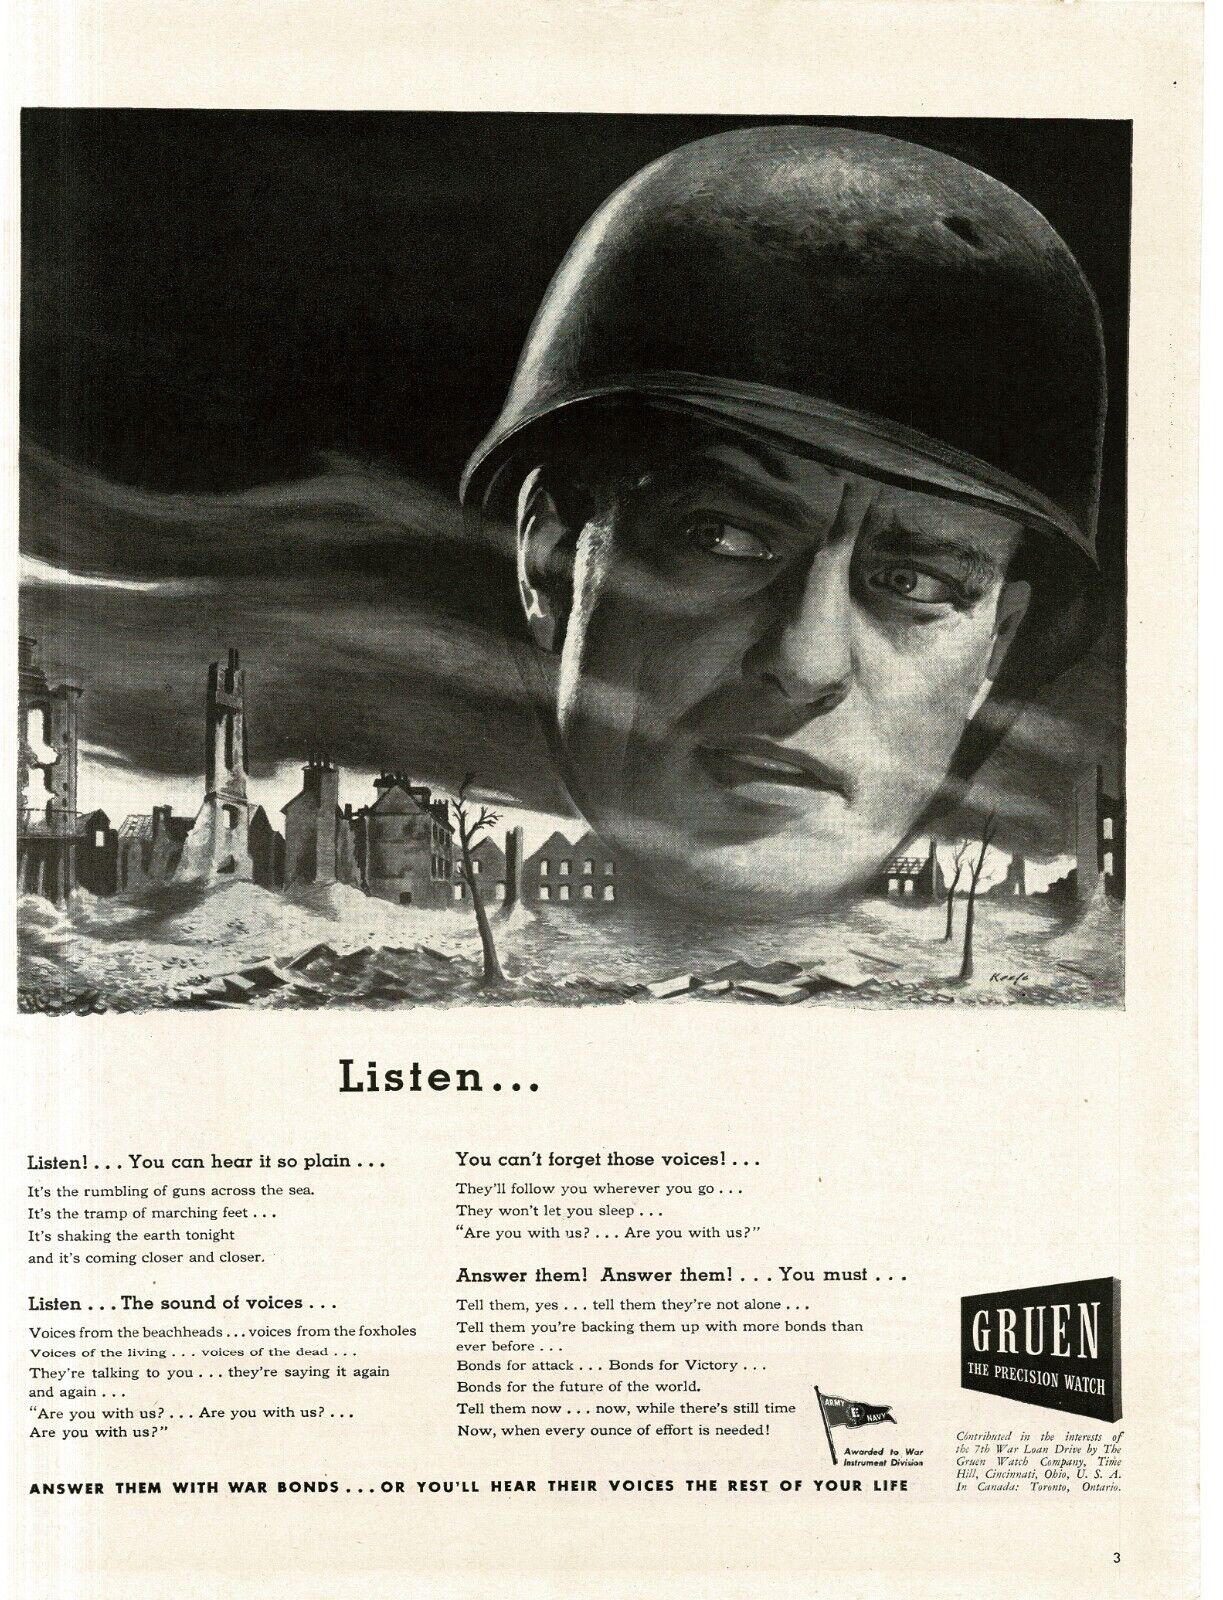 1945 Gruen Wrist Watches WWII Buy War Bonds Soldier City in Ruins Print Ad